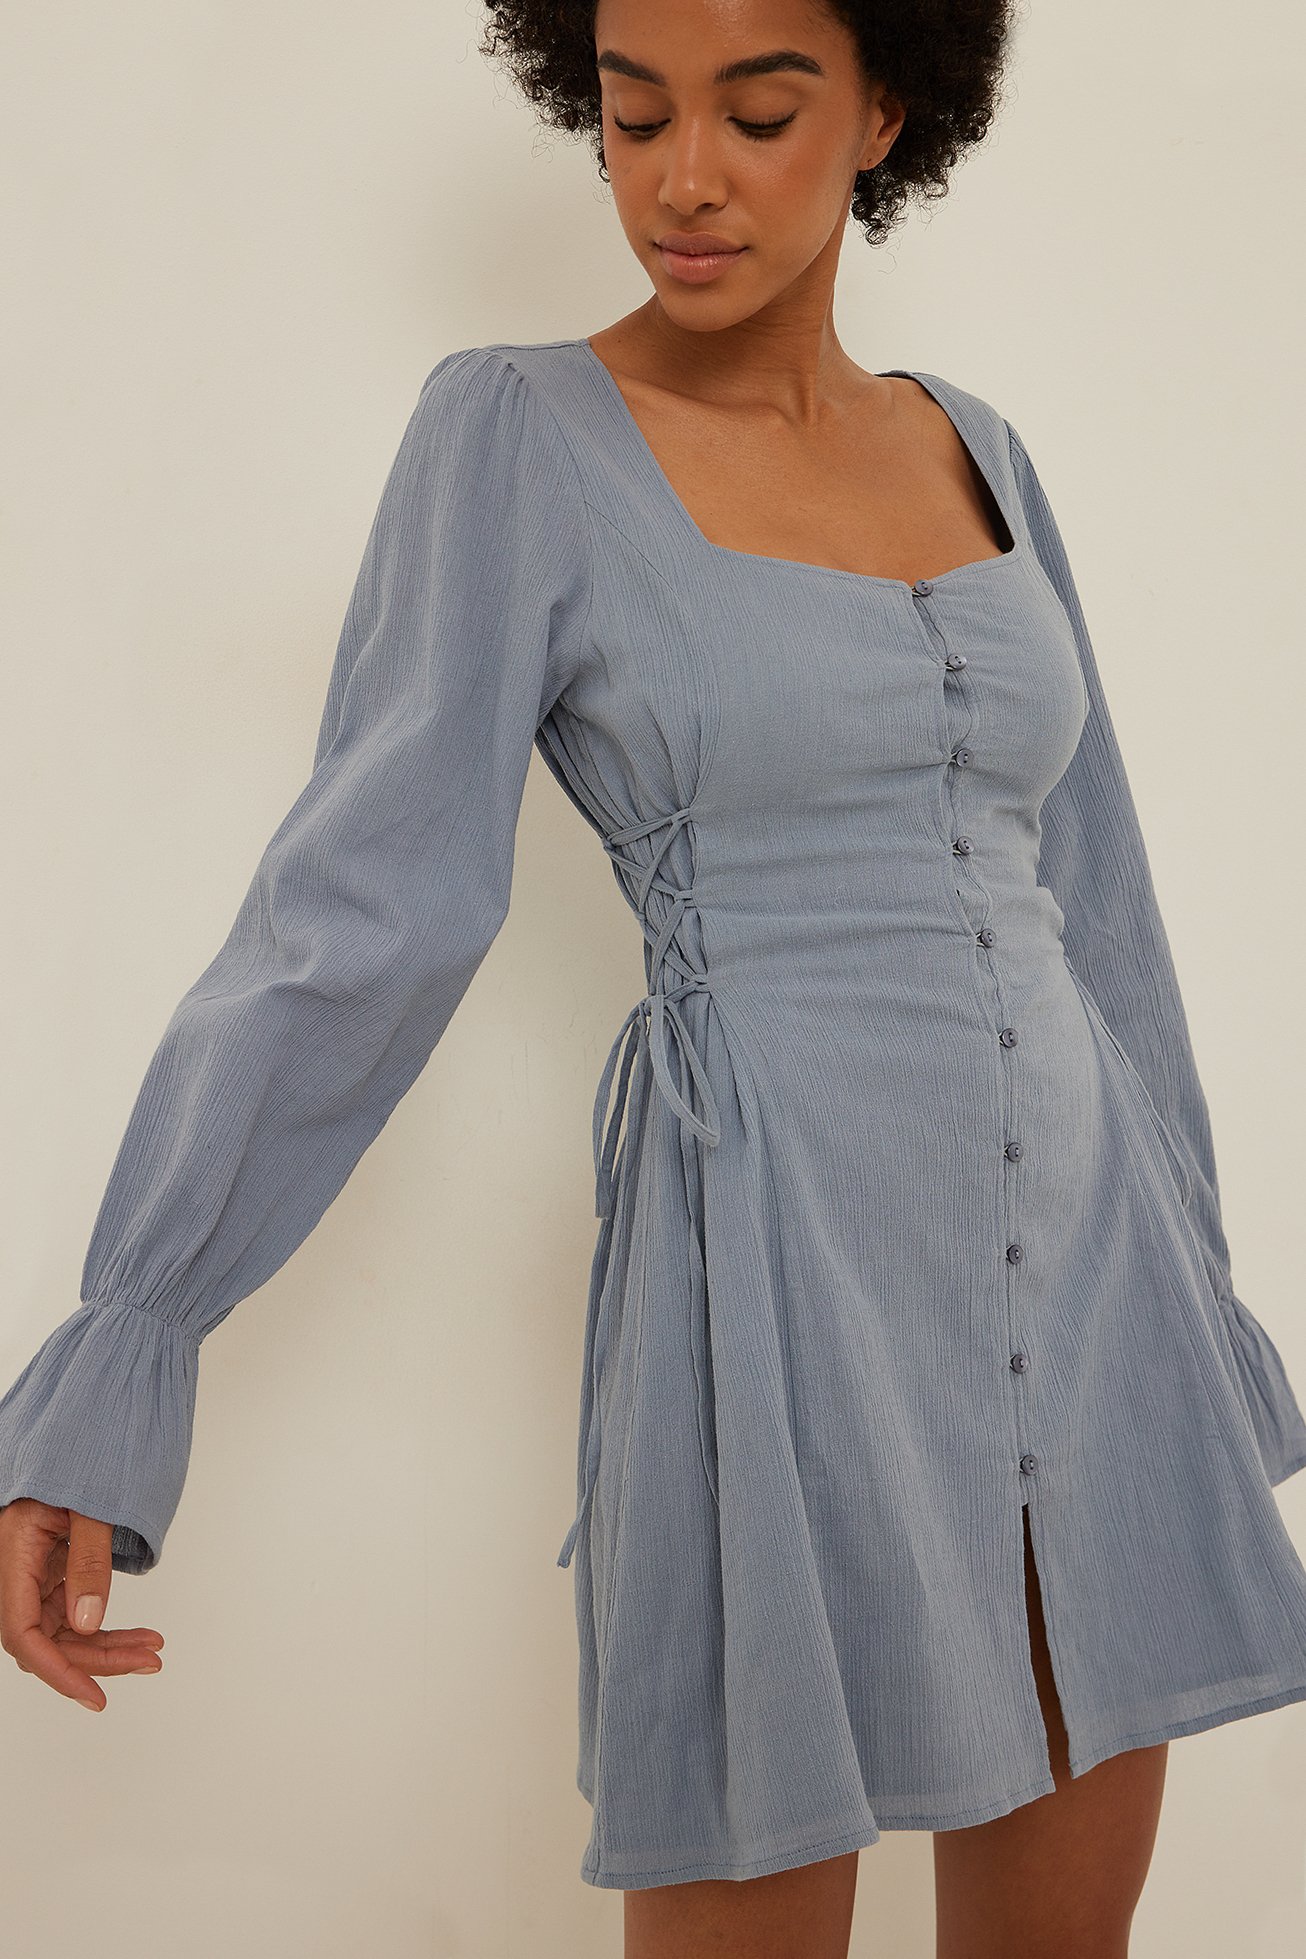 Dusty Blue Sides Lacing Detail Soft Cotton Dress